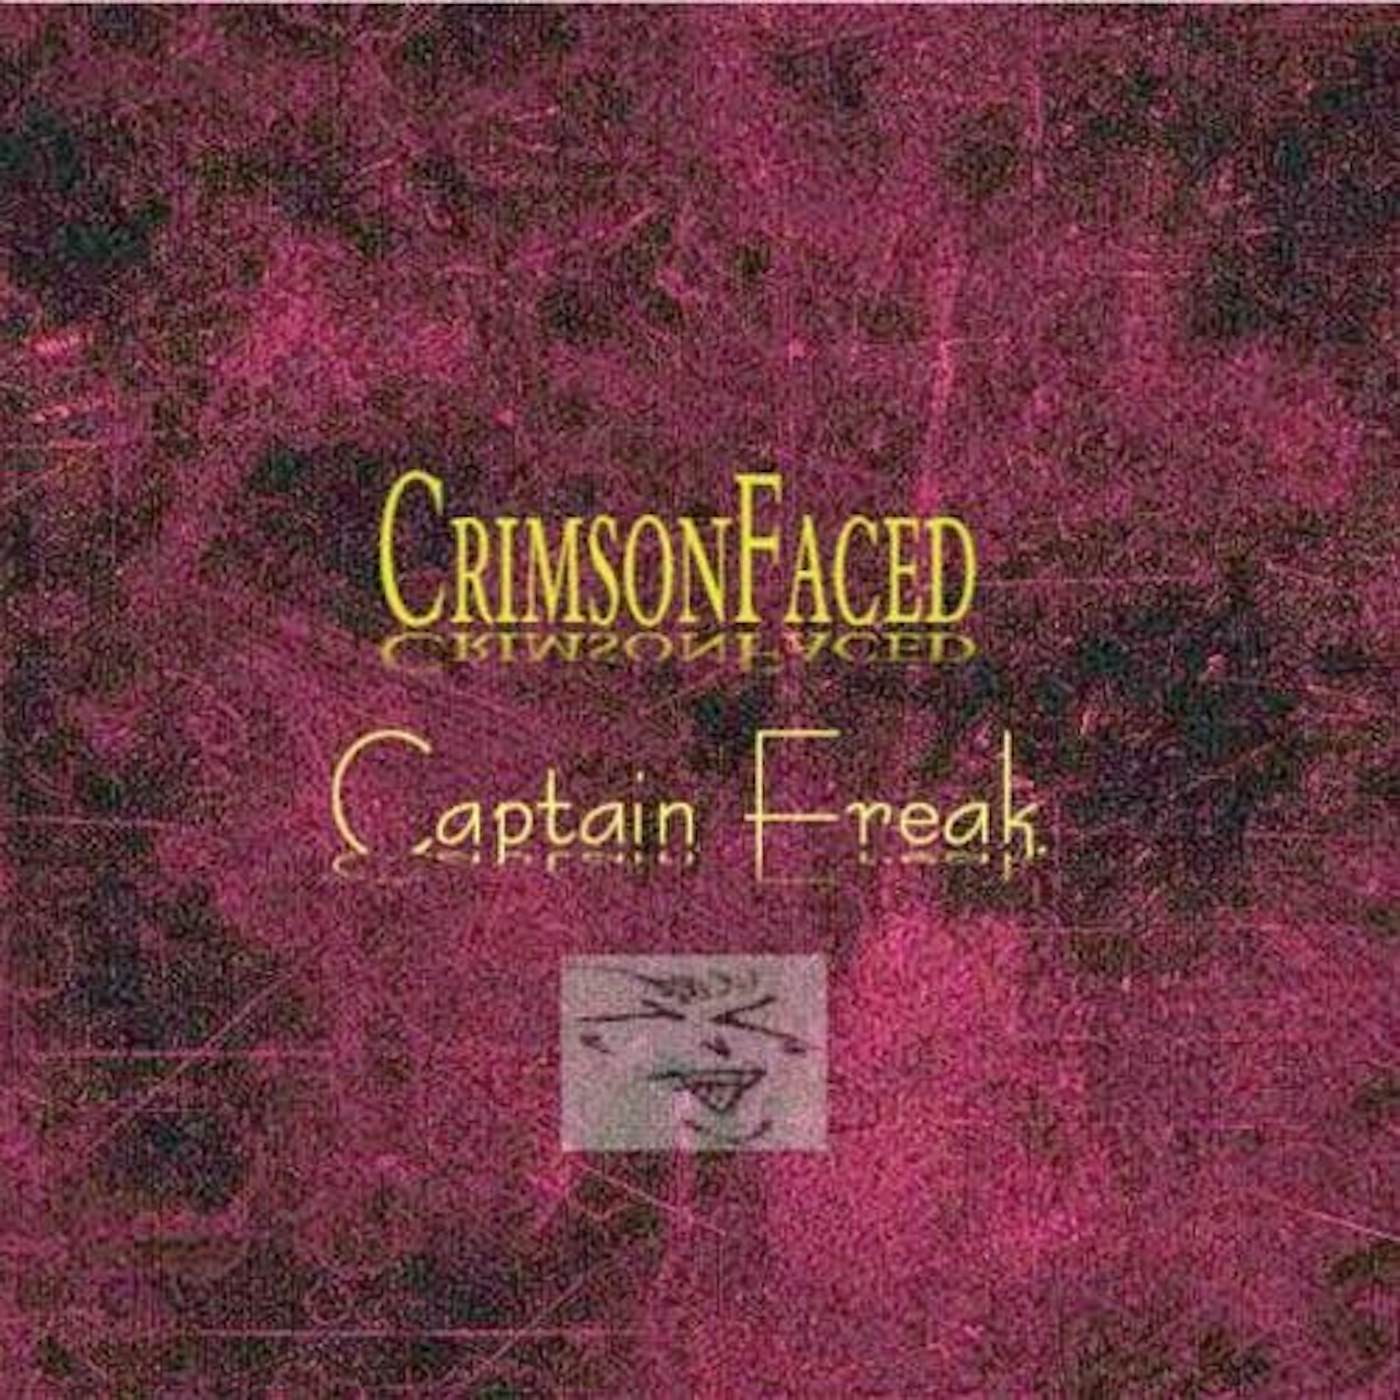 CrimsonFaced CAPTAIN FREAK CD